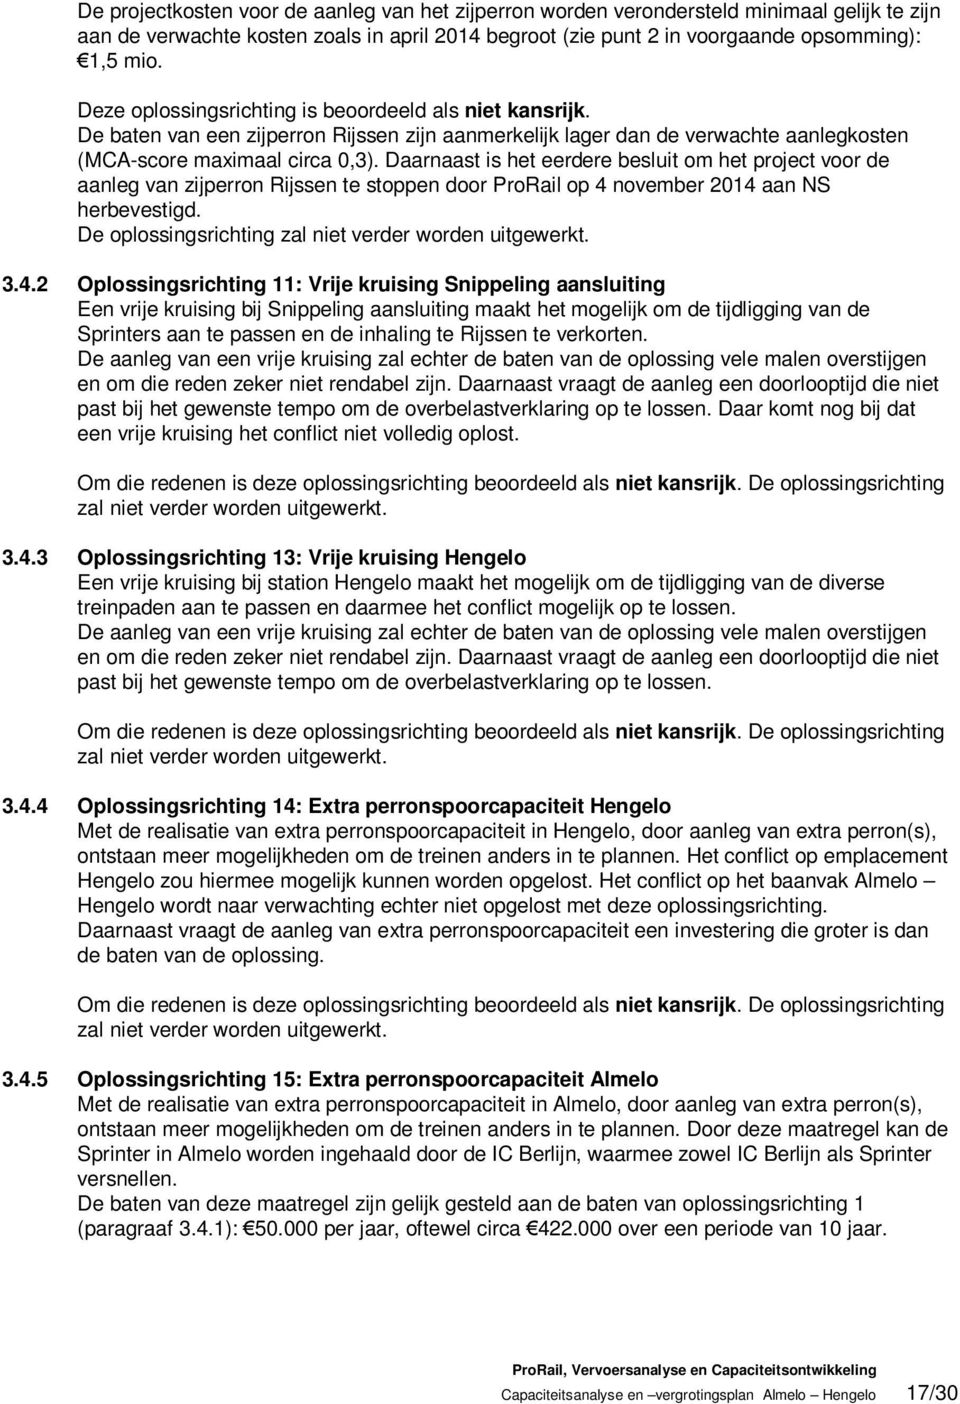 Daarnaast is het eerdere besluit om het project voor de aanleg van zijperron Rijssen te stoppen door ProRail op 4 november 2014 aan NS herbevestigd.